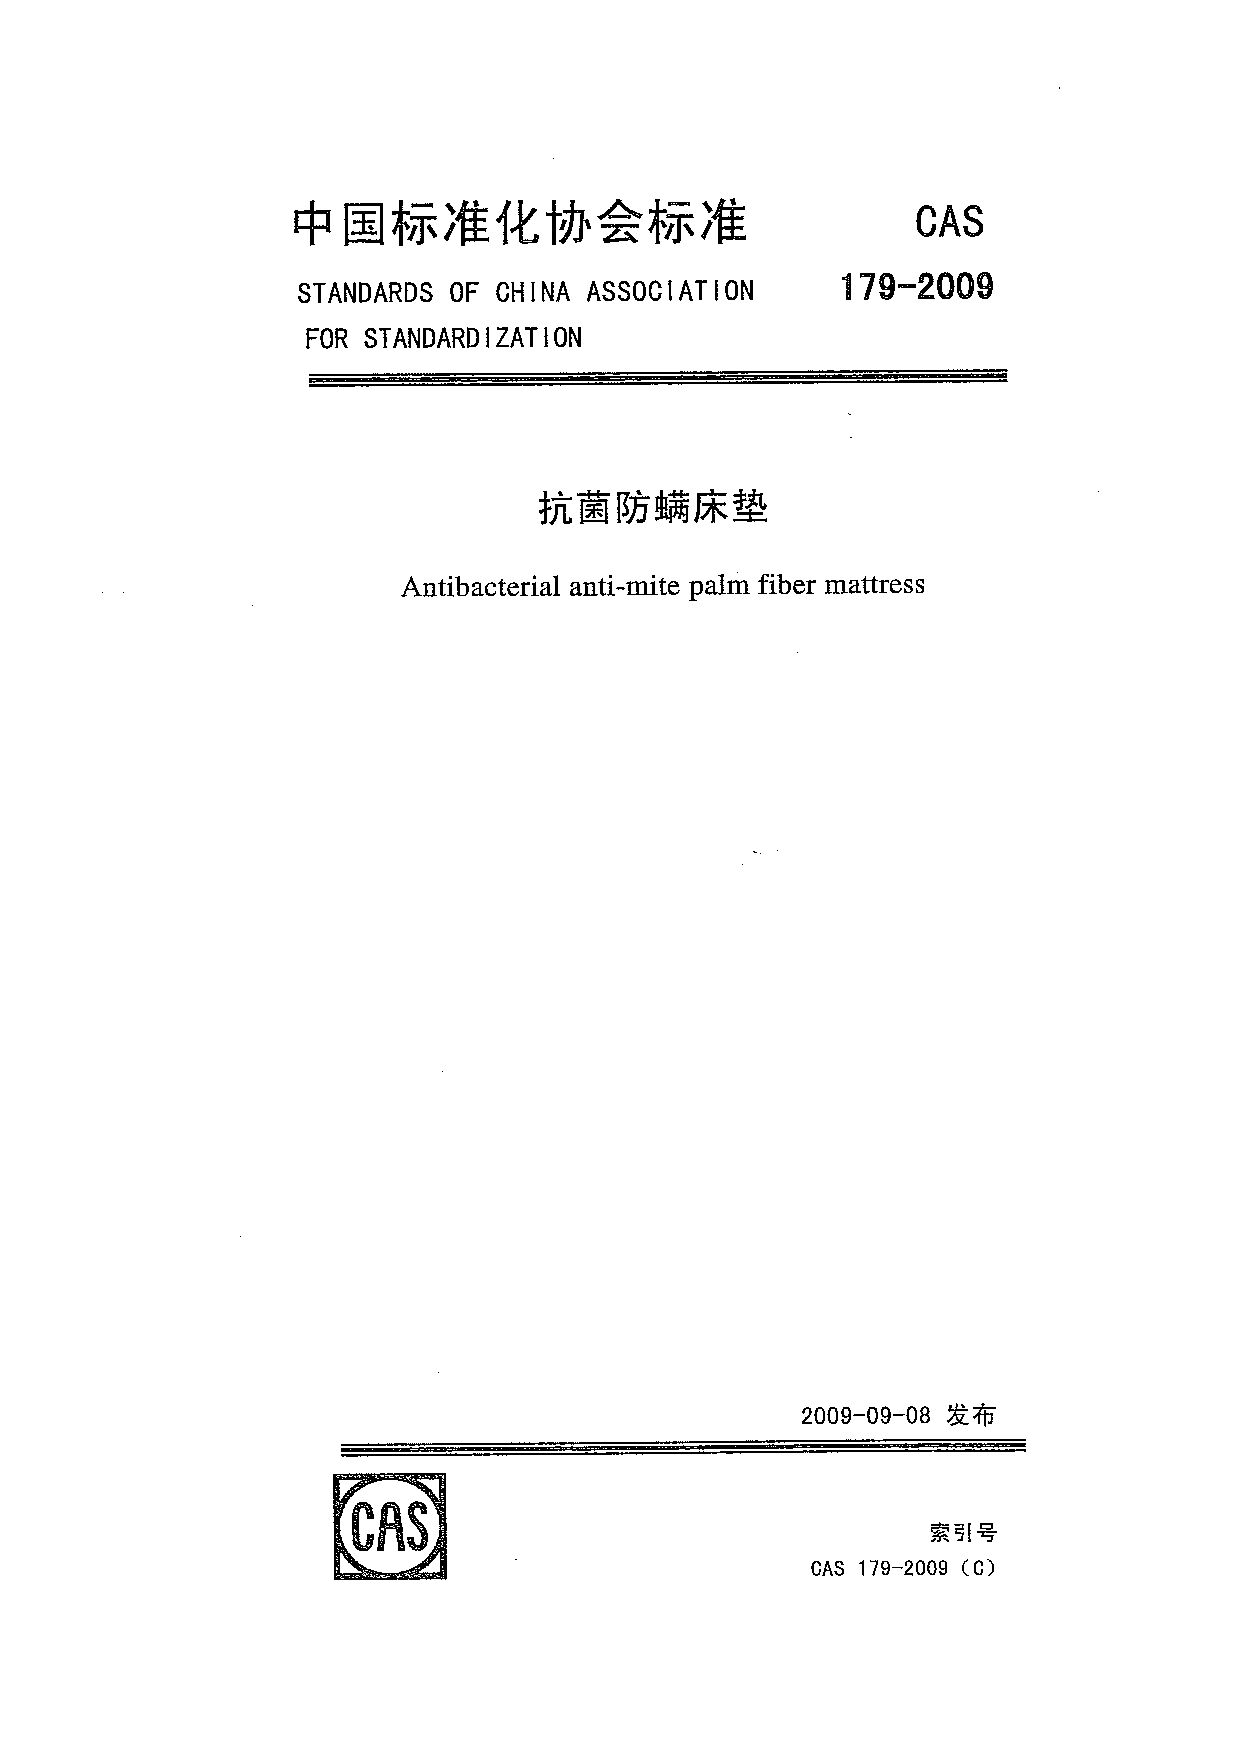 CAS 179-2009封面图